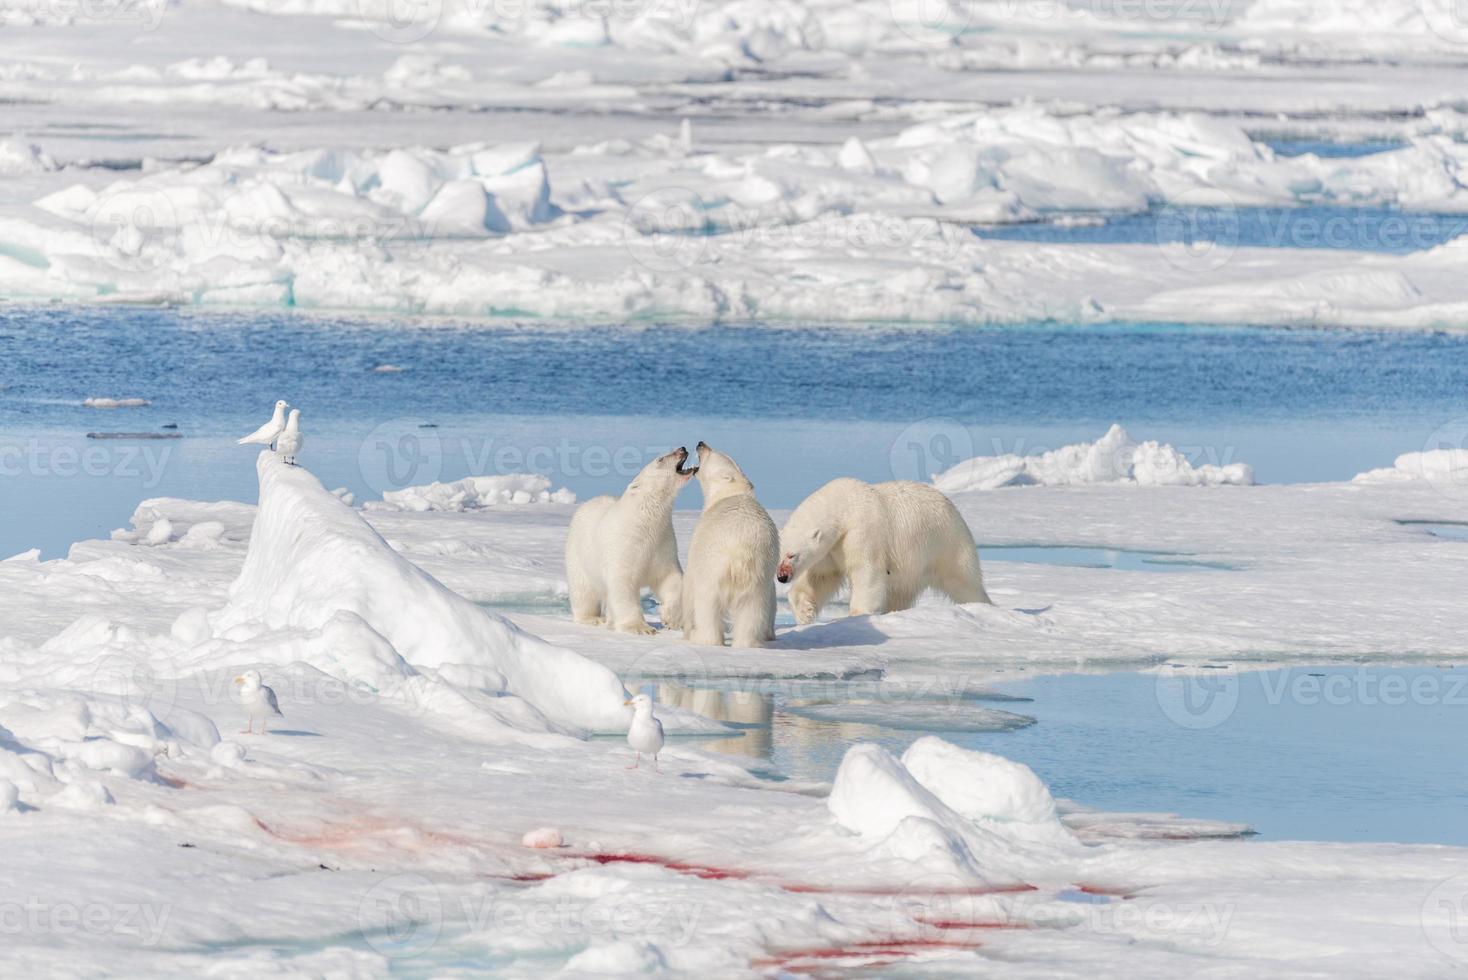 Madre de oso polar salvaje y dos cachorros en la banquisa, al norte de Svalbard, Noruega ártica foto